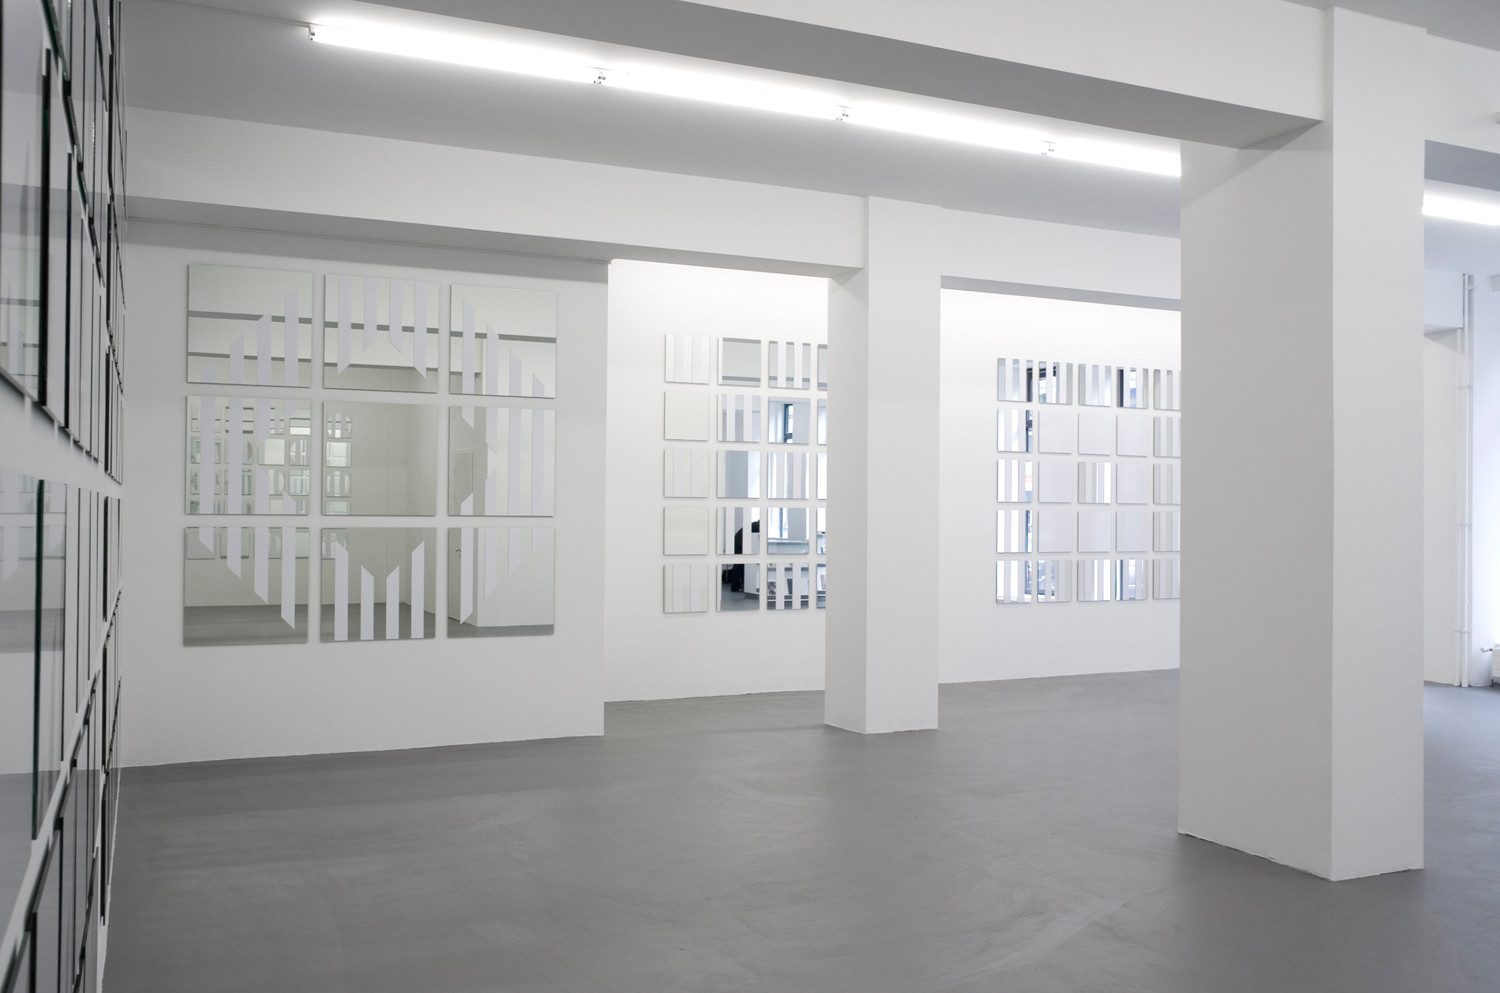 Daniel Buren, ‘voir se voir savoir’, Installationsansicht, Buchmann Galerie, 2005